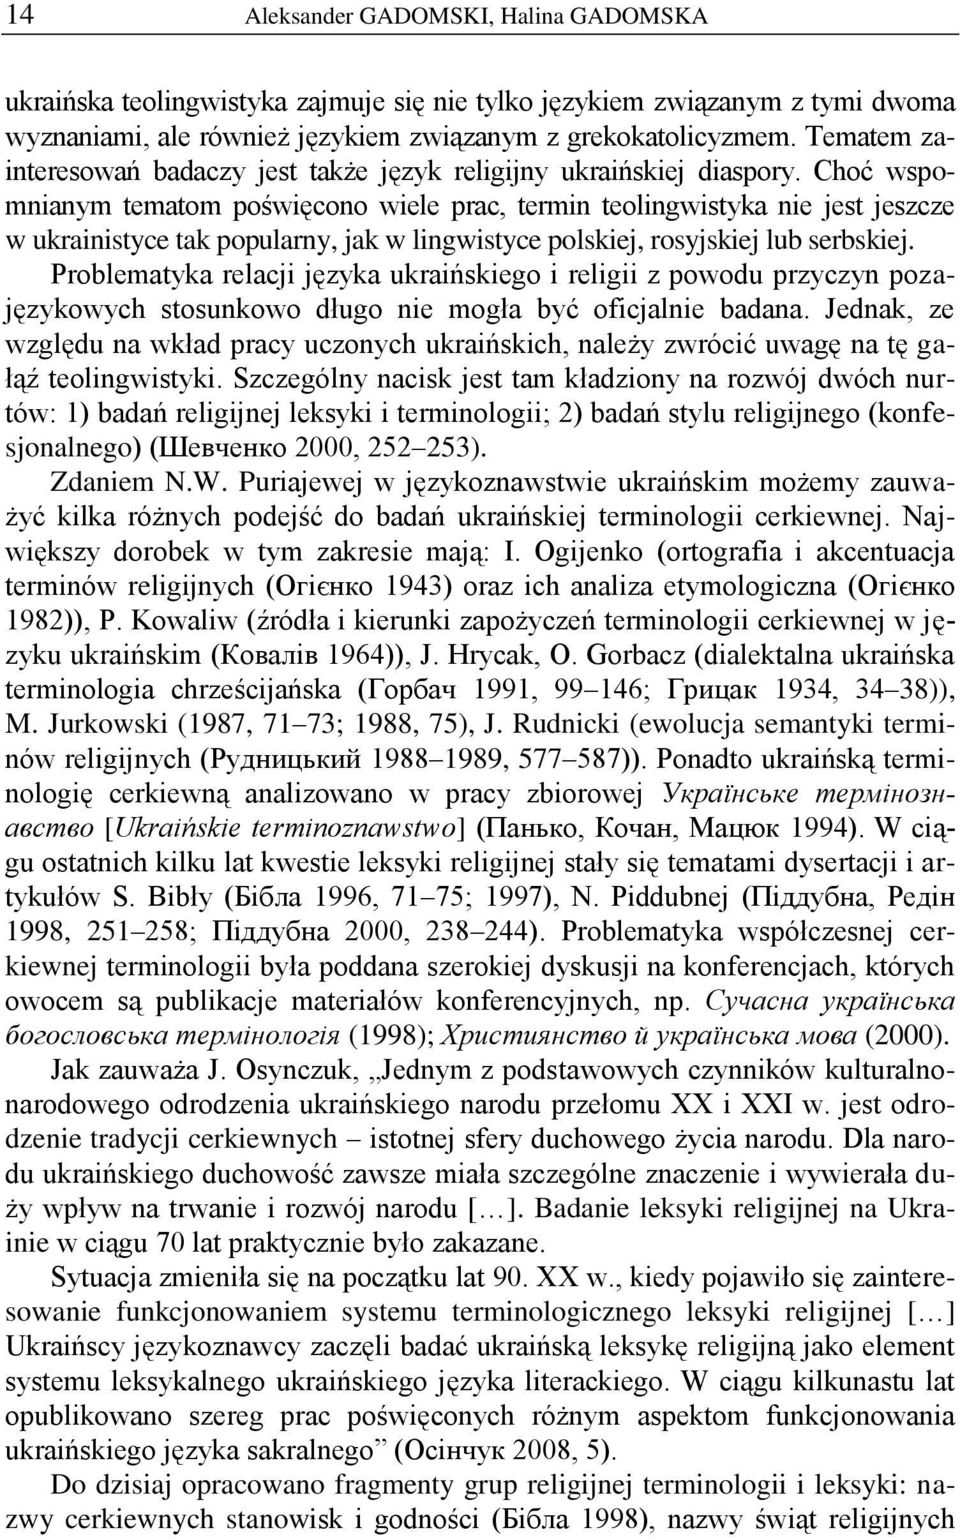 Choć wspomnianym tematom poświęcono wiele prac, termin teolingwistyka nie jest jeszcze w ukrainistyce tak popularny, jak w lingwistyce polskiej, rosyjskiej lub serbskiej.